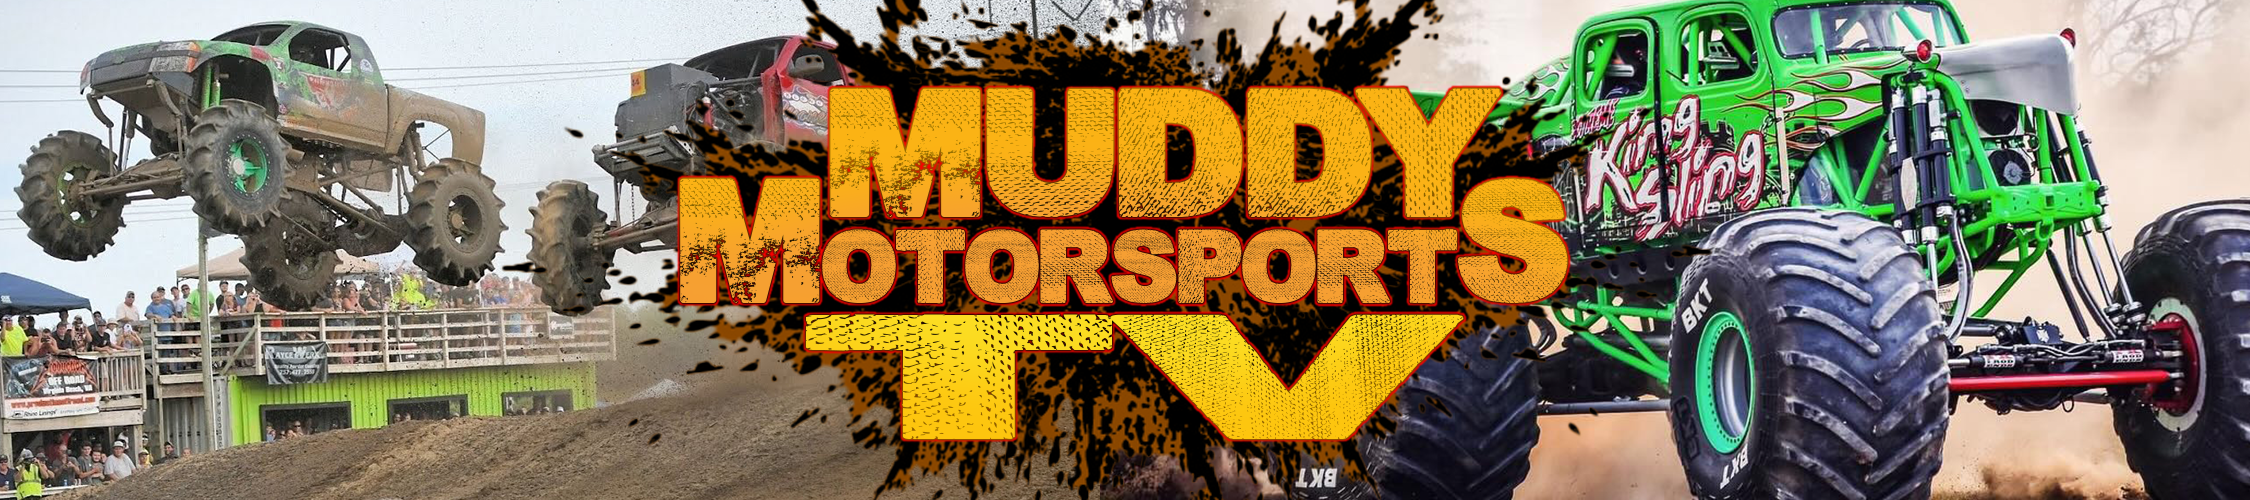 About Muddy Motorsports